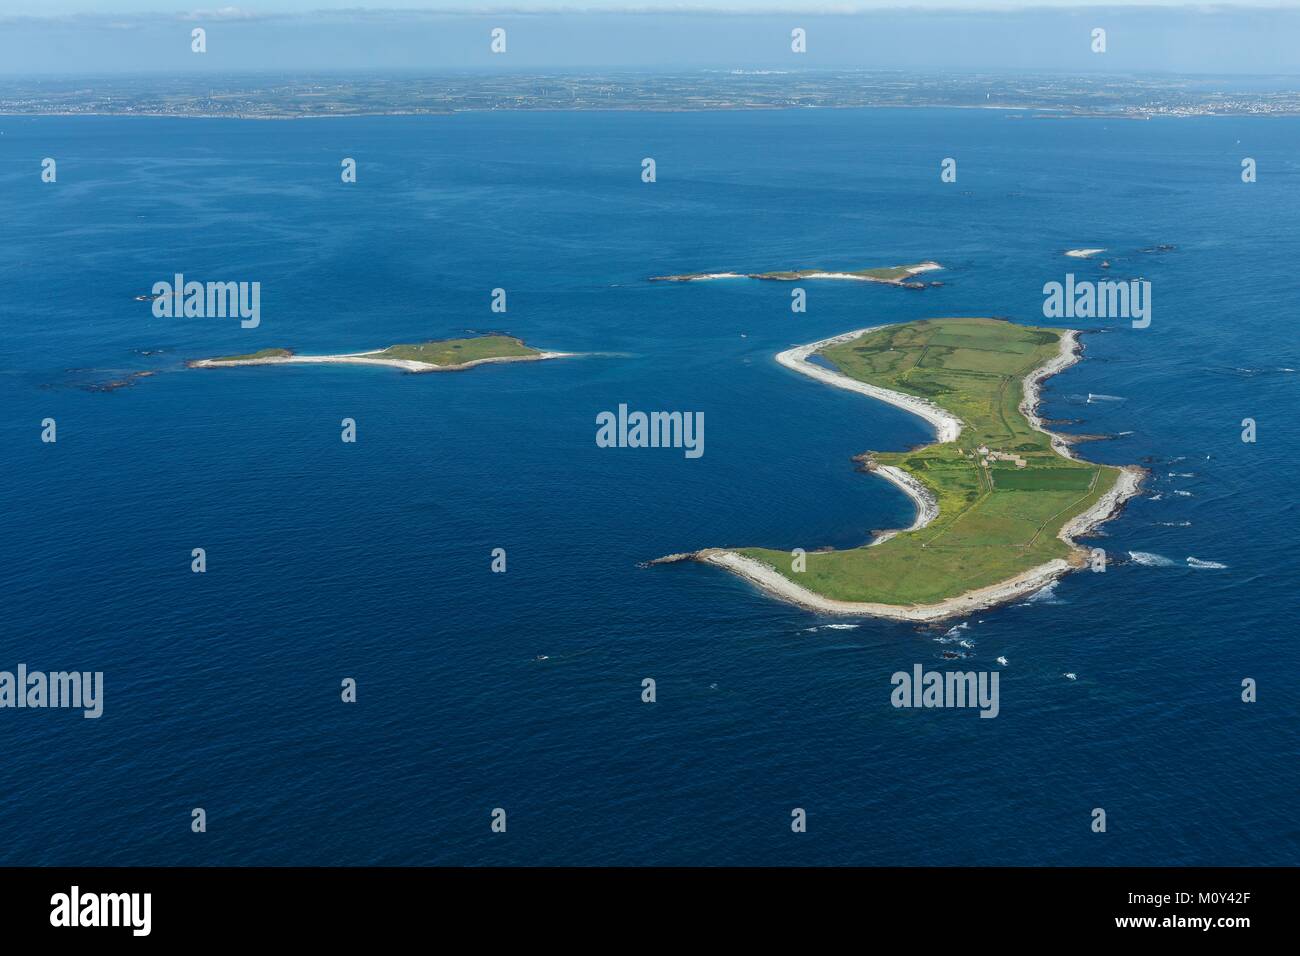 France,Finistere,Le Conquet,Molene archipelago,Quéménès and Lédénez Quéménès islands (aerial view) Stock Photo